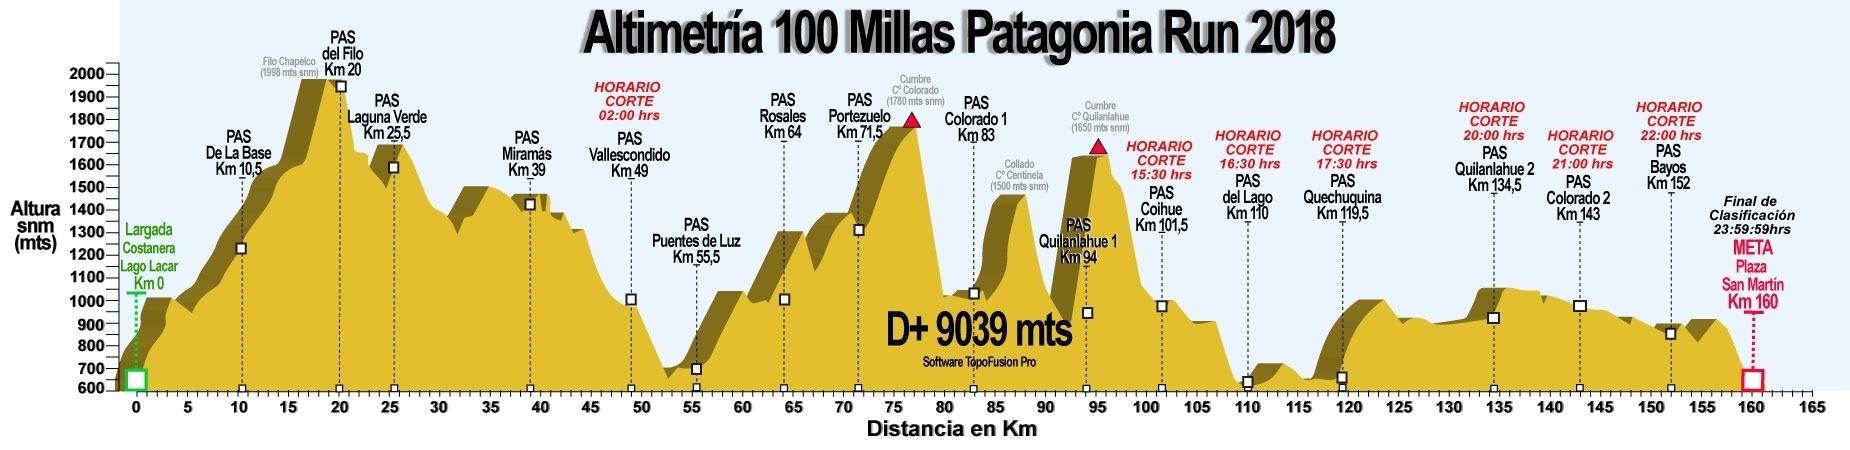 patagonia_run_altimetria